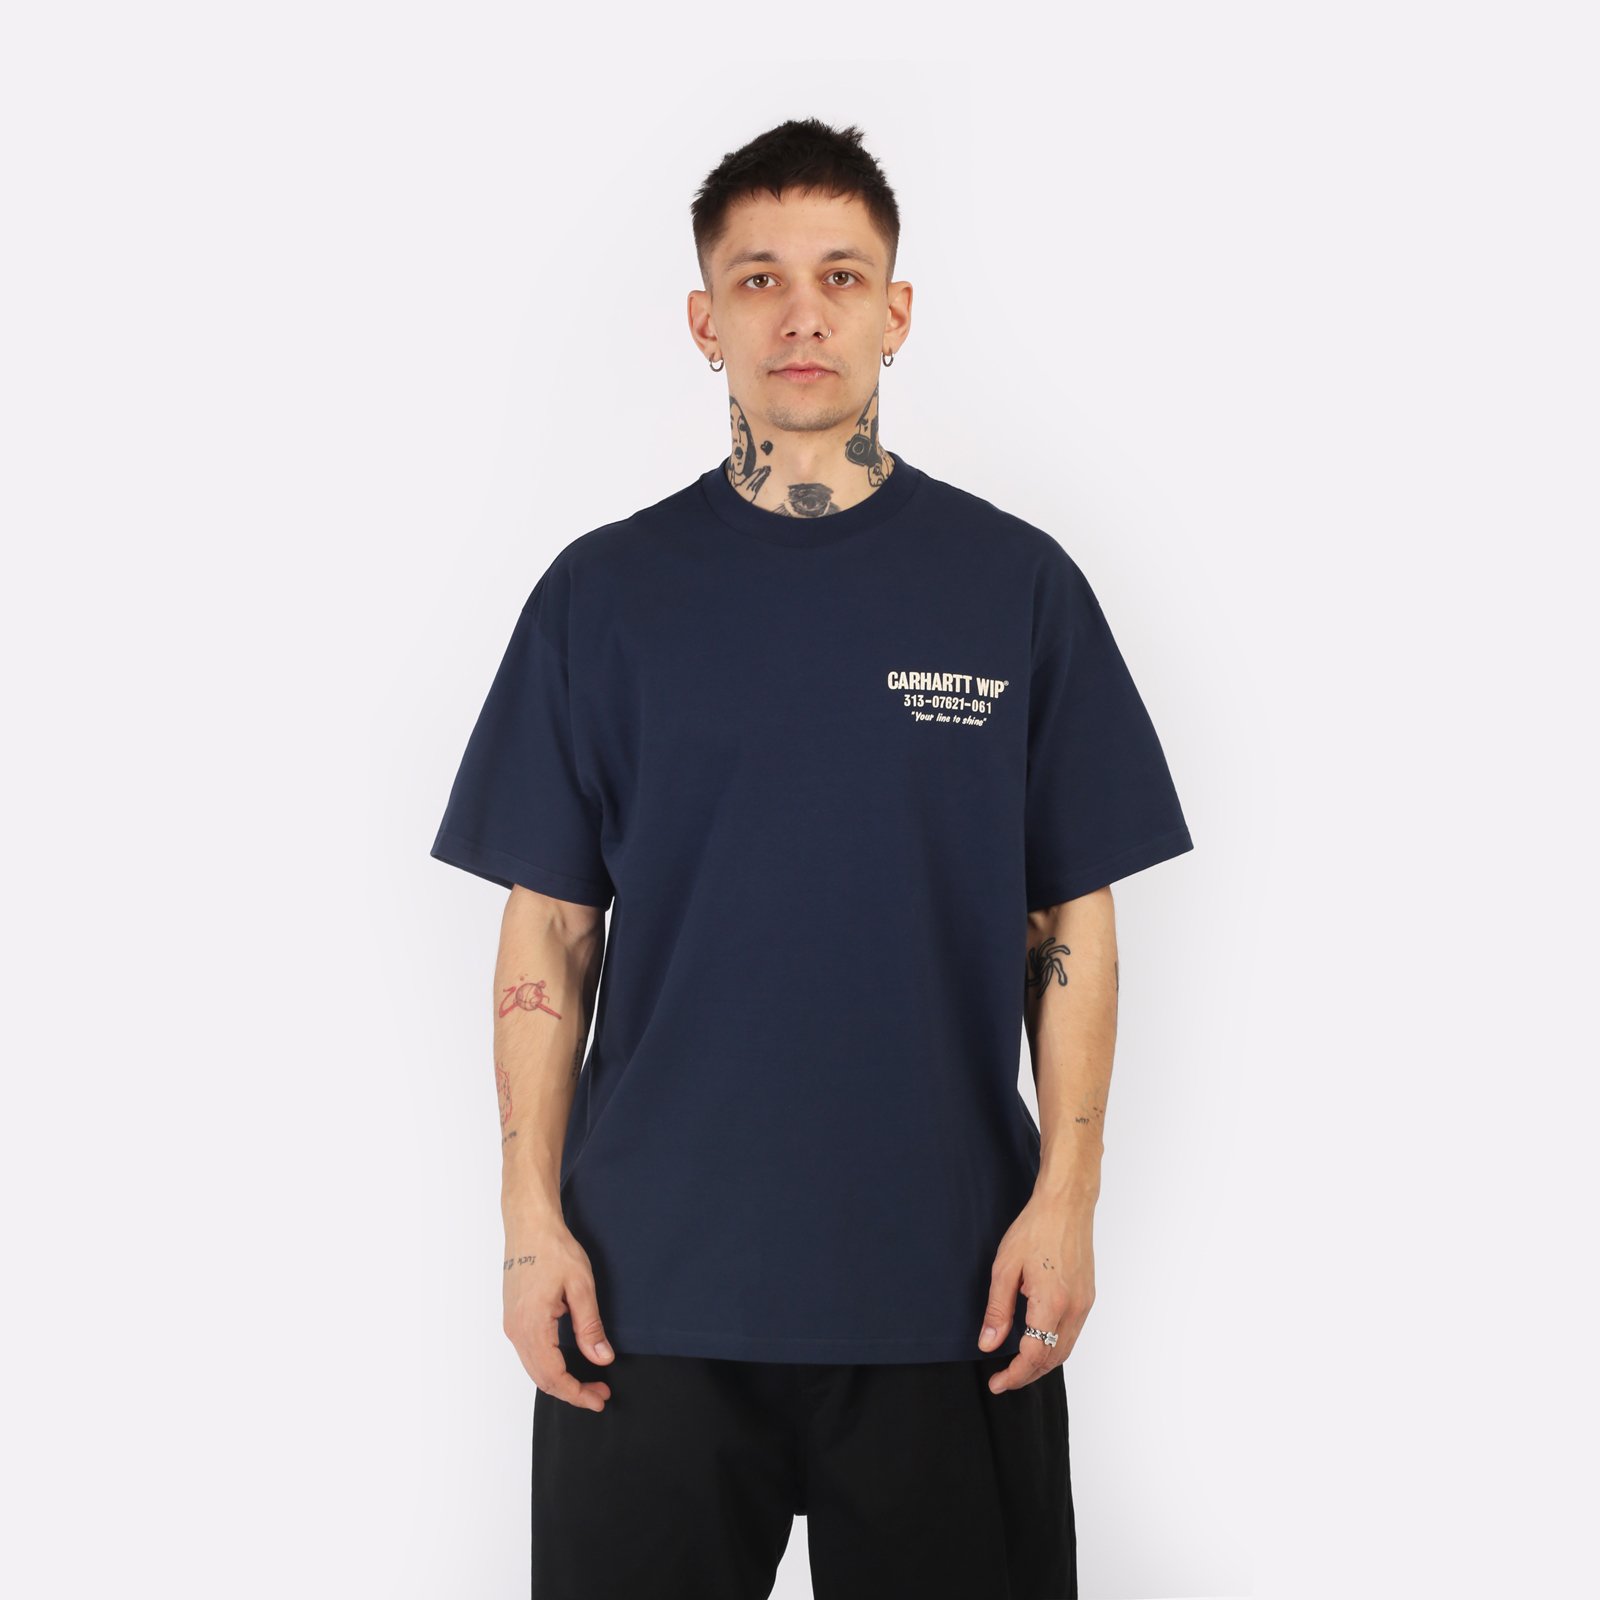 мужская синяя футболка Carhartt WIP S/S Less Troubles T-Shirt I033187-blue/wax - цена, описание, фото 1